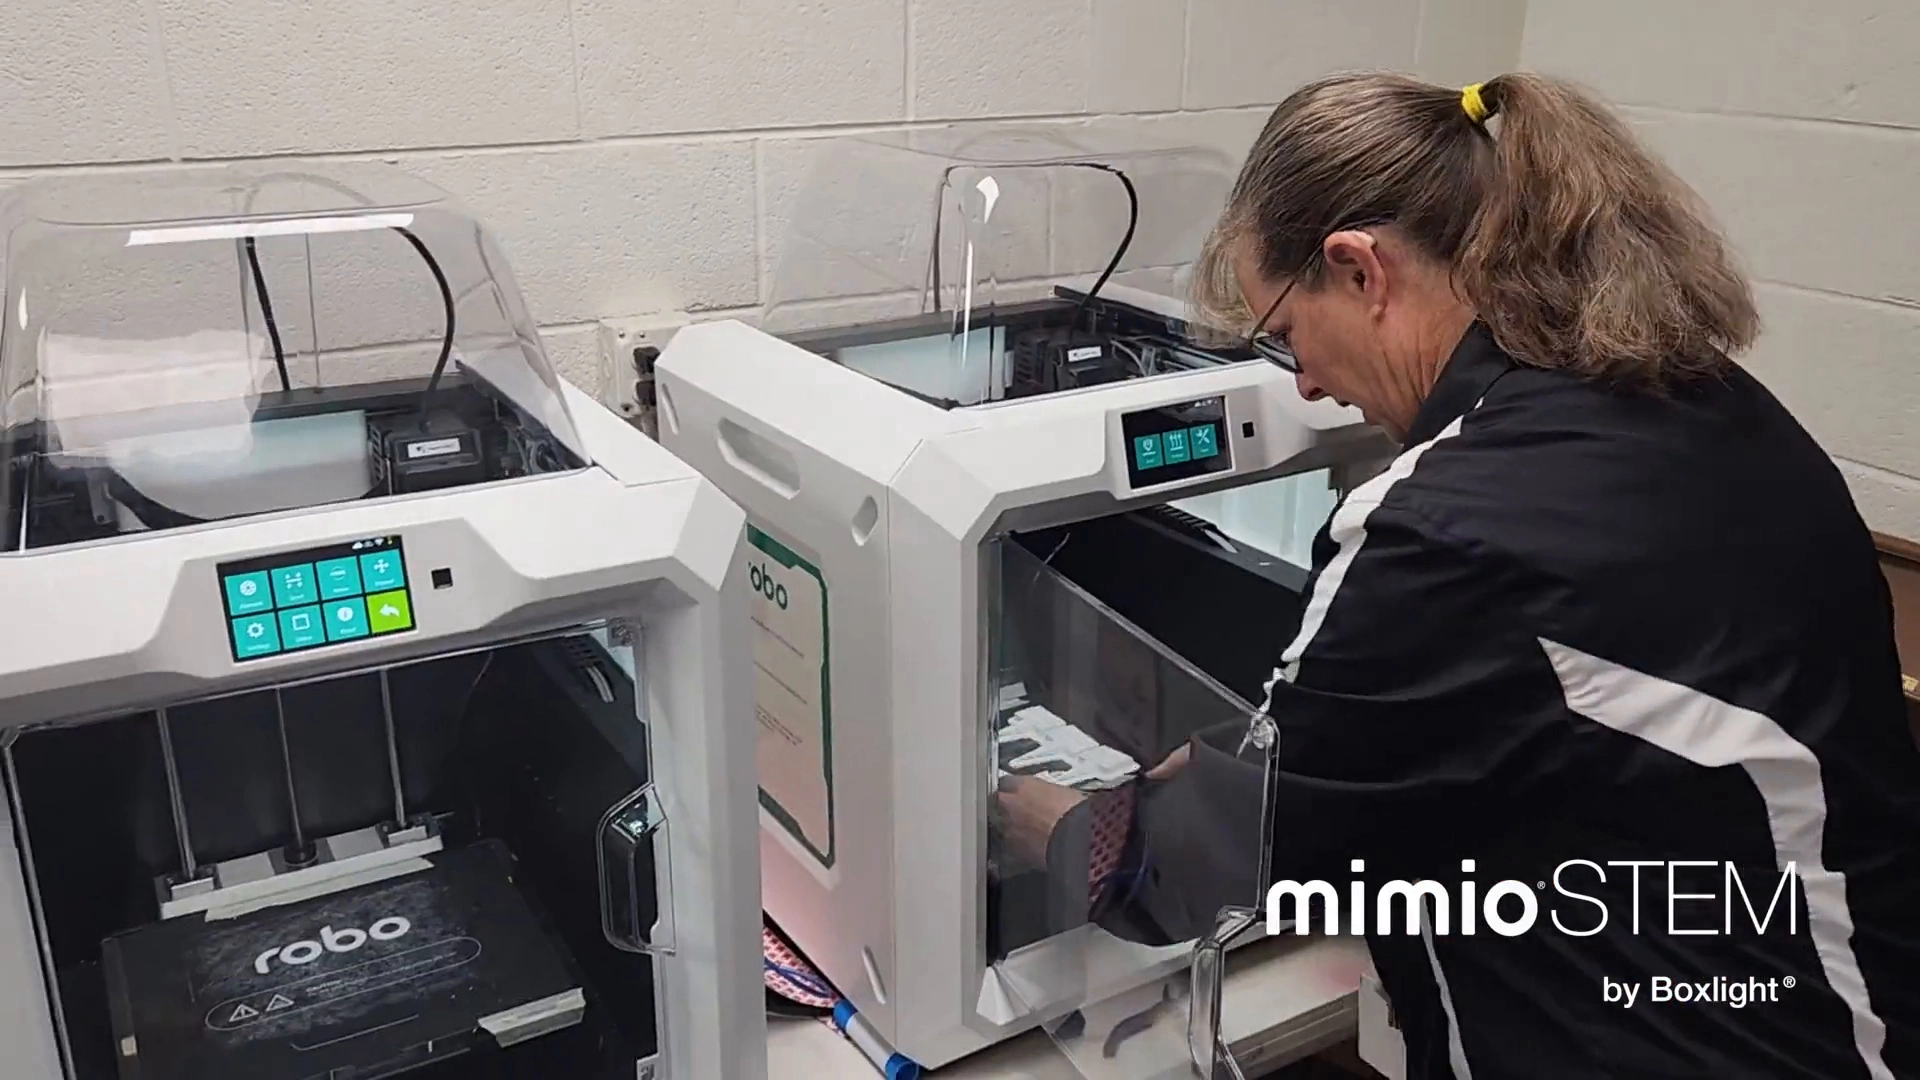 Innovatieve 3D-printtechnologie zorgt voor een revolutie in gepersonaliseerd leren en stimuleert creatieve probleemoplossing